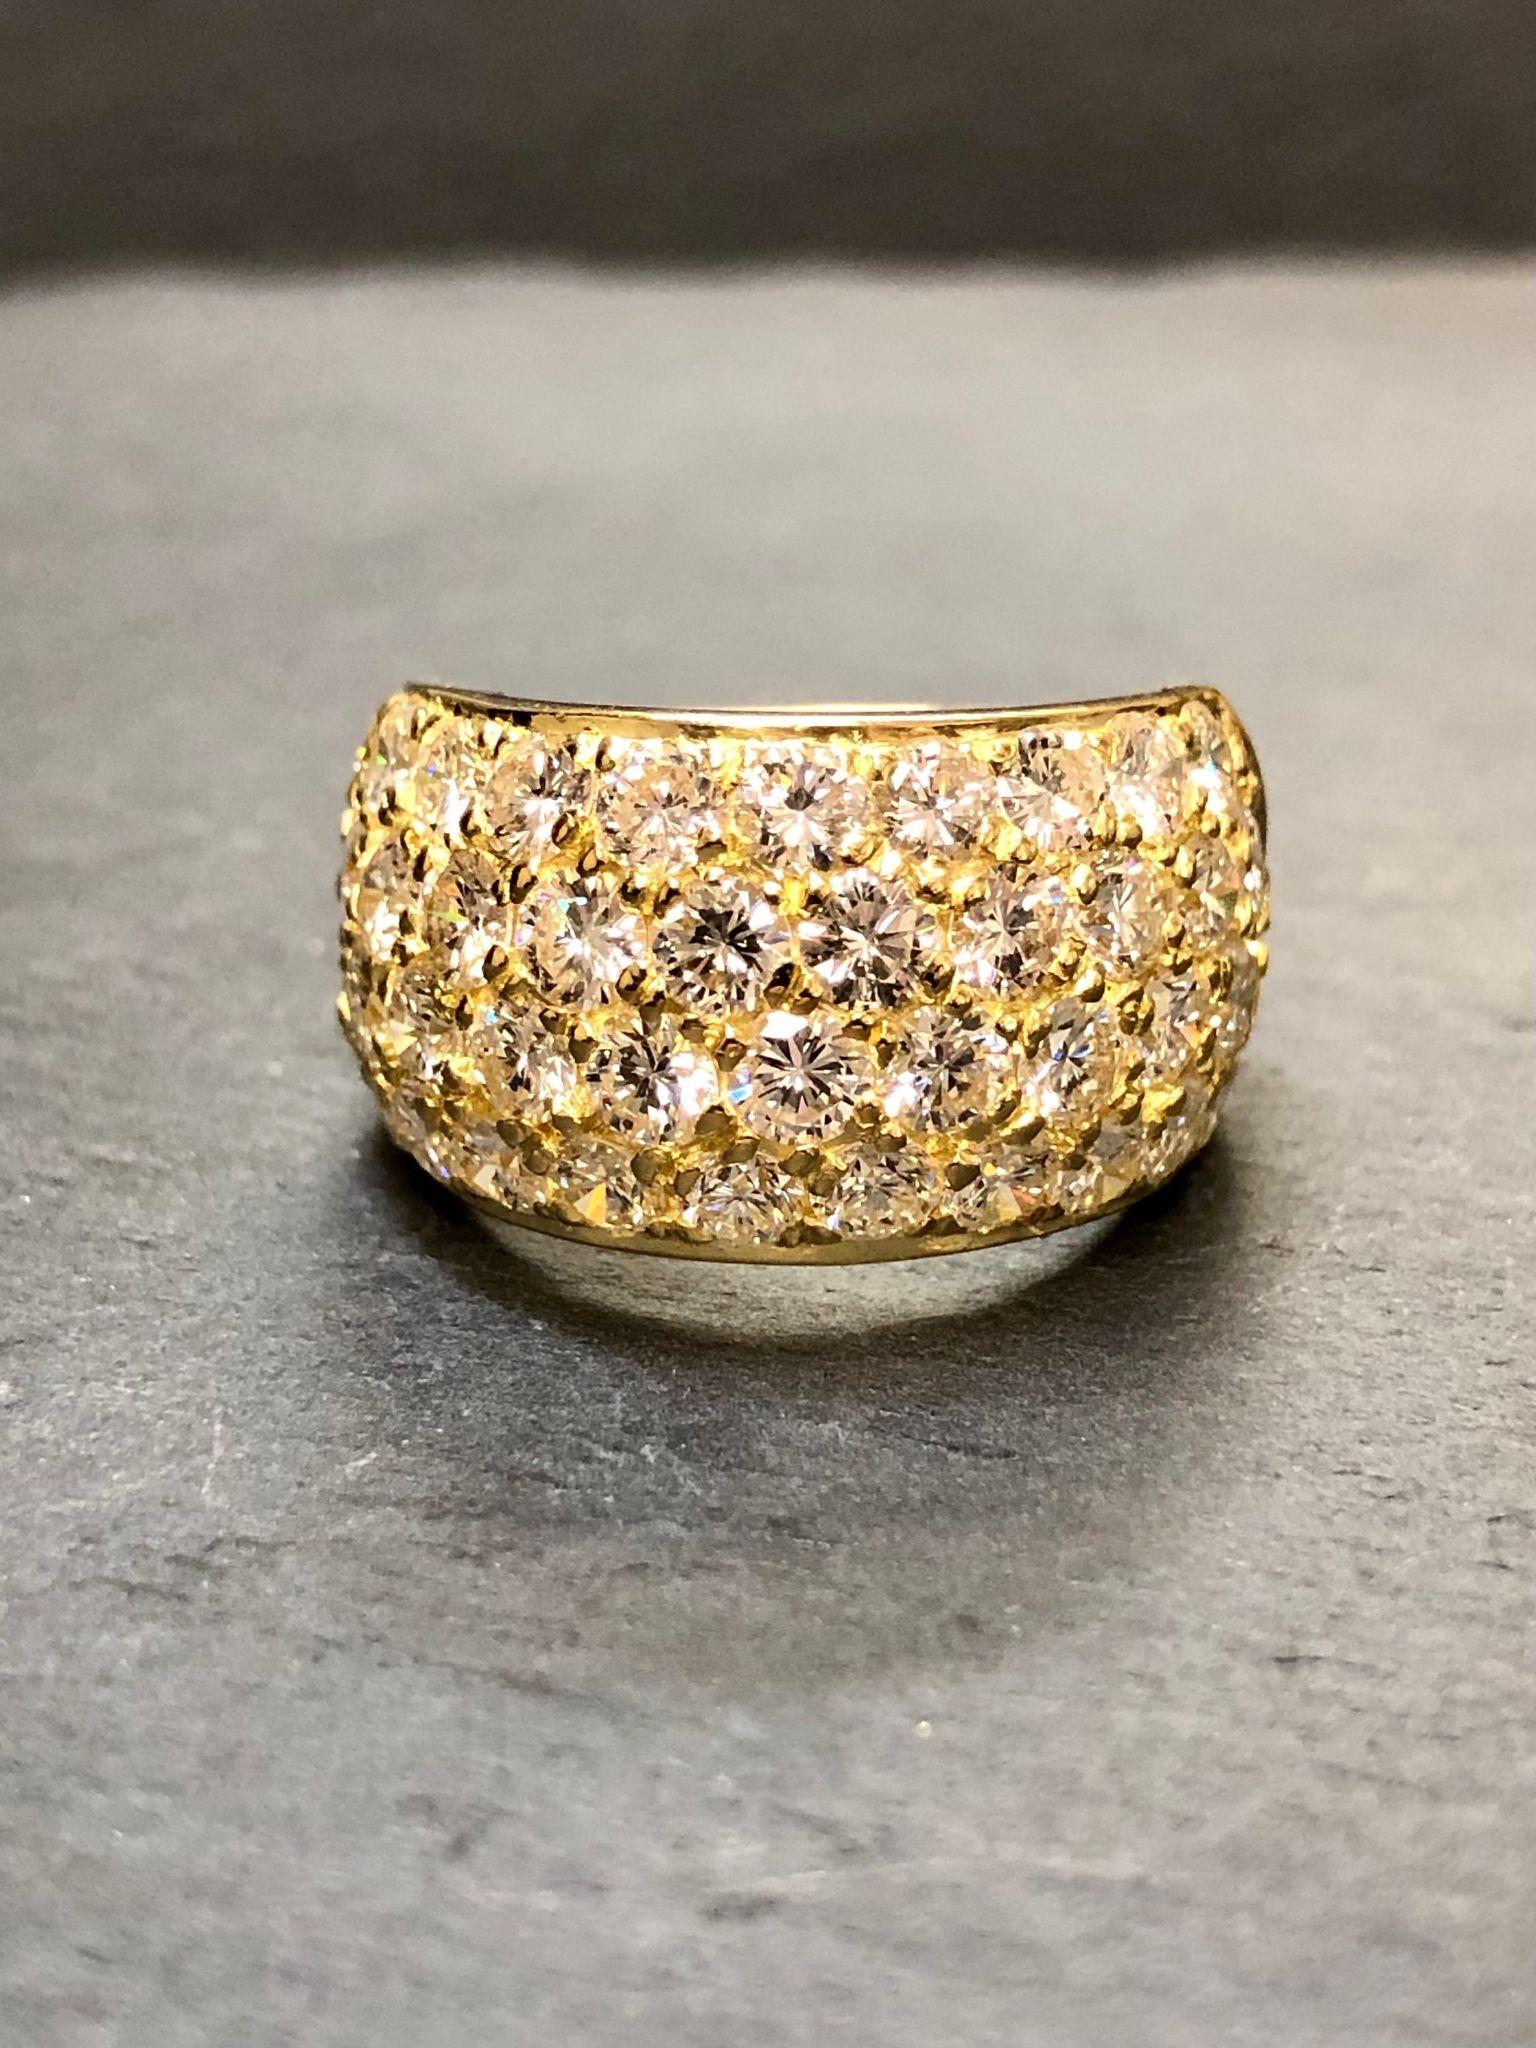 Ein extrem gut gemachter Ring aus 18 Karat Gelbgold, besetzt mit perfekt aufeinander abgestimmten großen Diamanten in Collectional-Qualität der Farbe E-G und der Reinheit Vs1 mit einem ungefähren Gesamtgewicht von 4,65cttw. Beachten Sie auch die